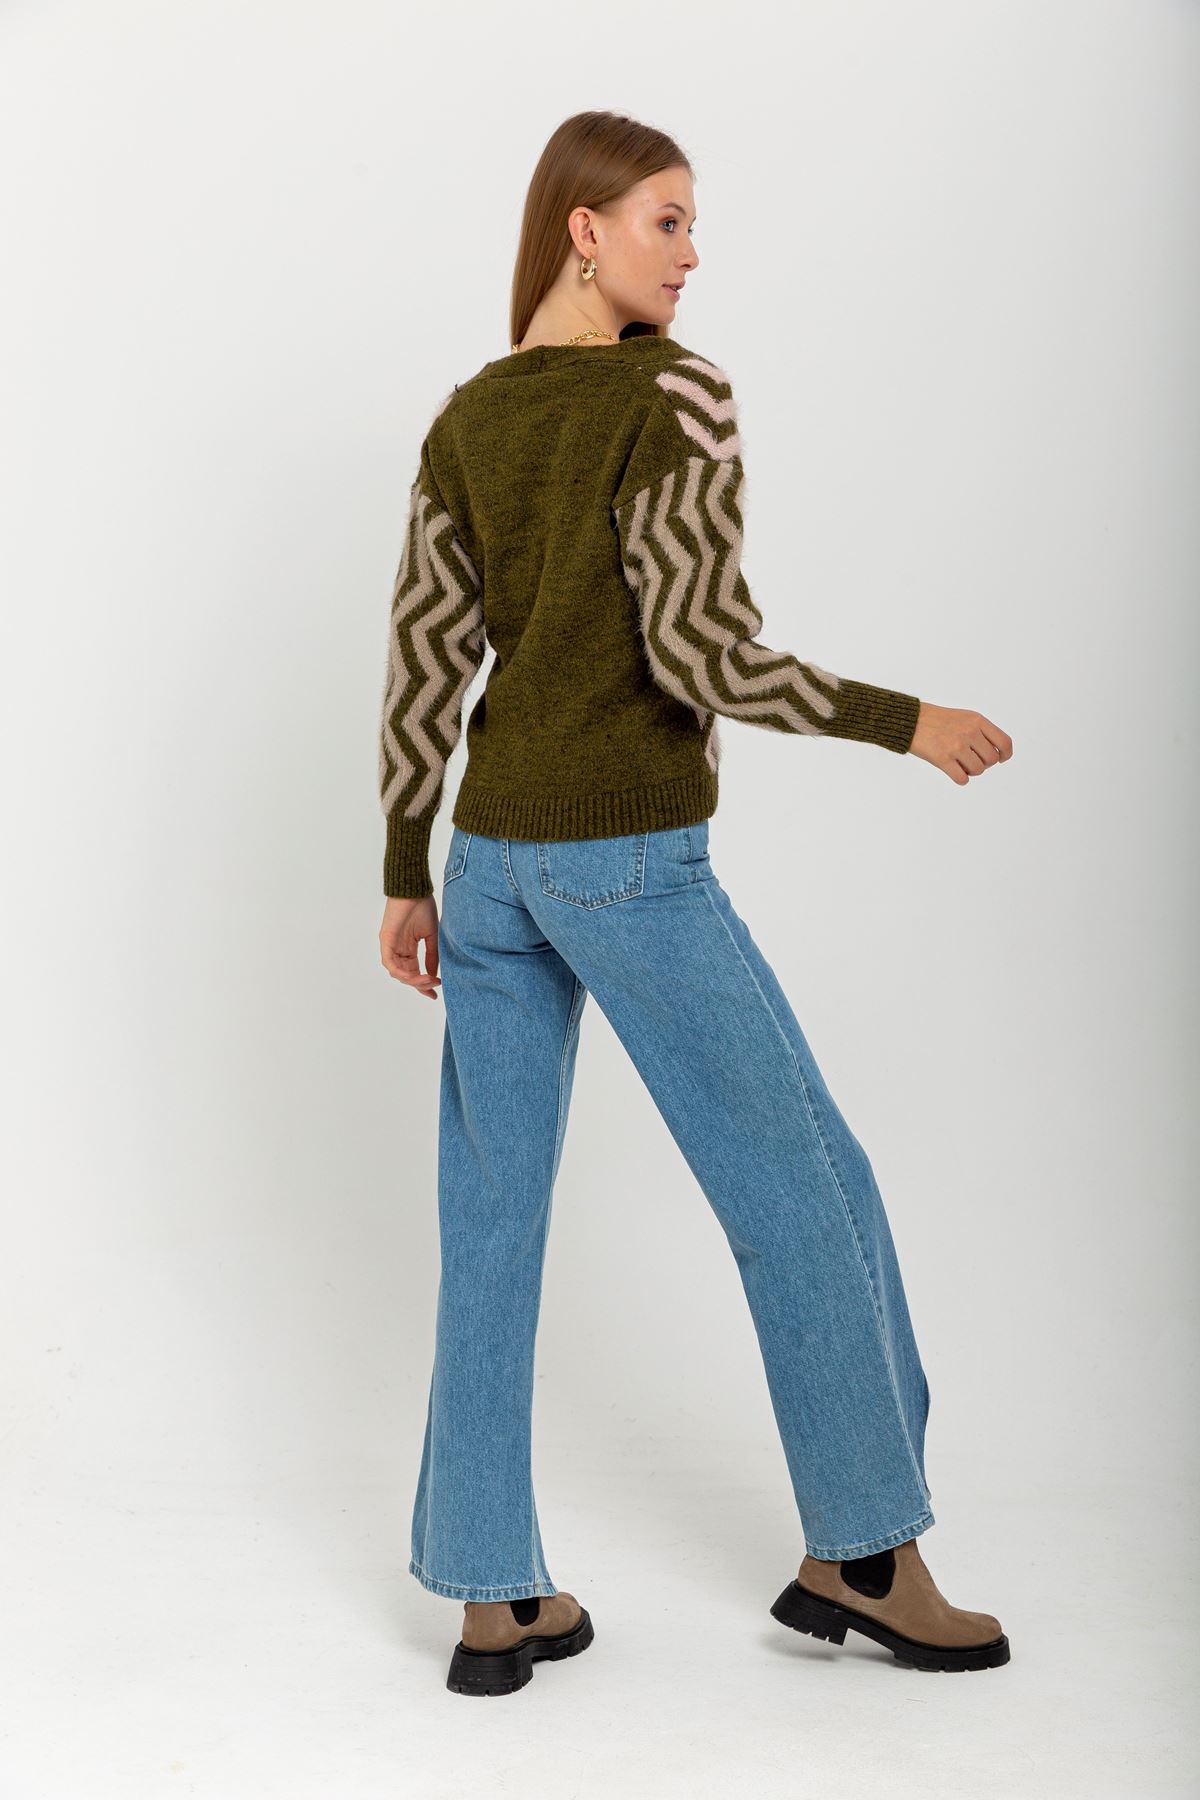 Knitwear Fabric Long Sleeve V-Neck Short Fringed Women Cardigan - Khaki 